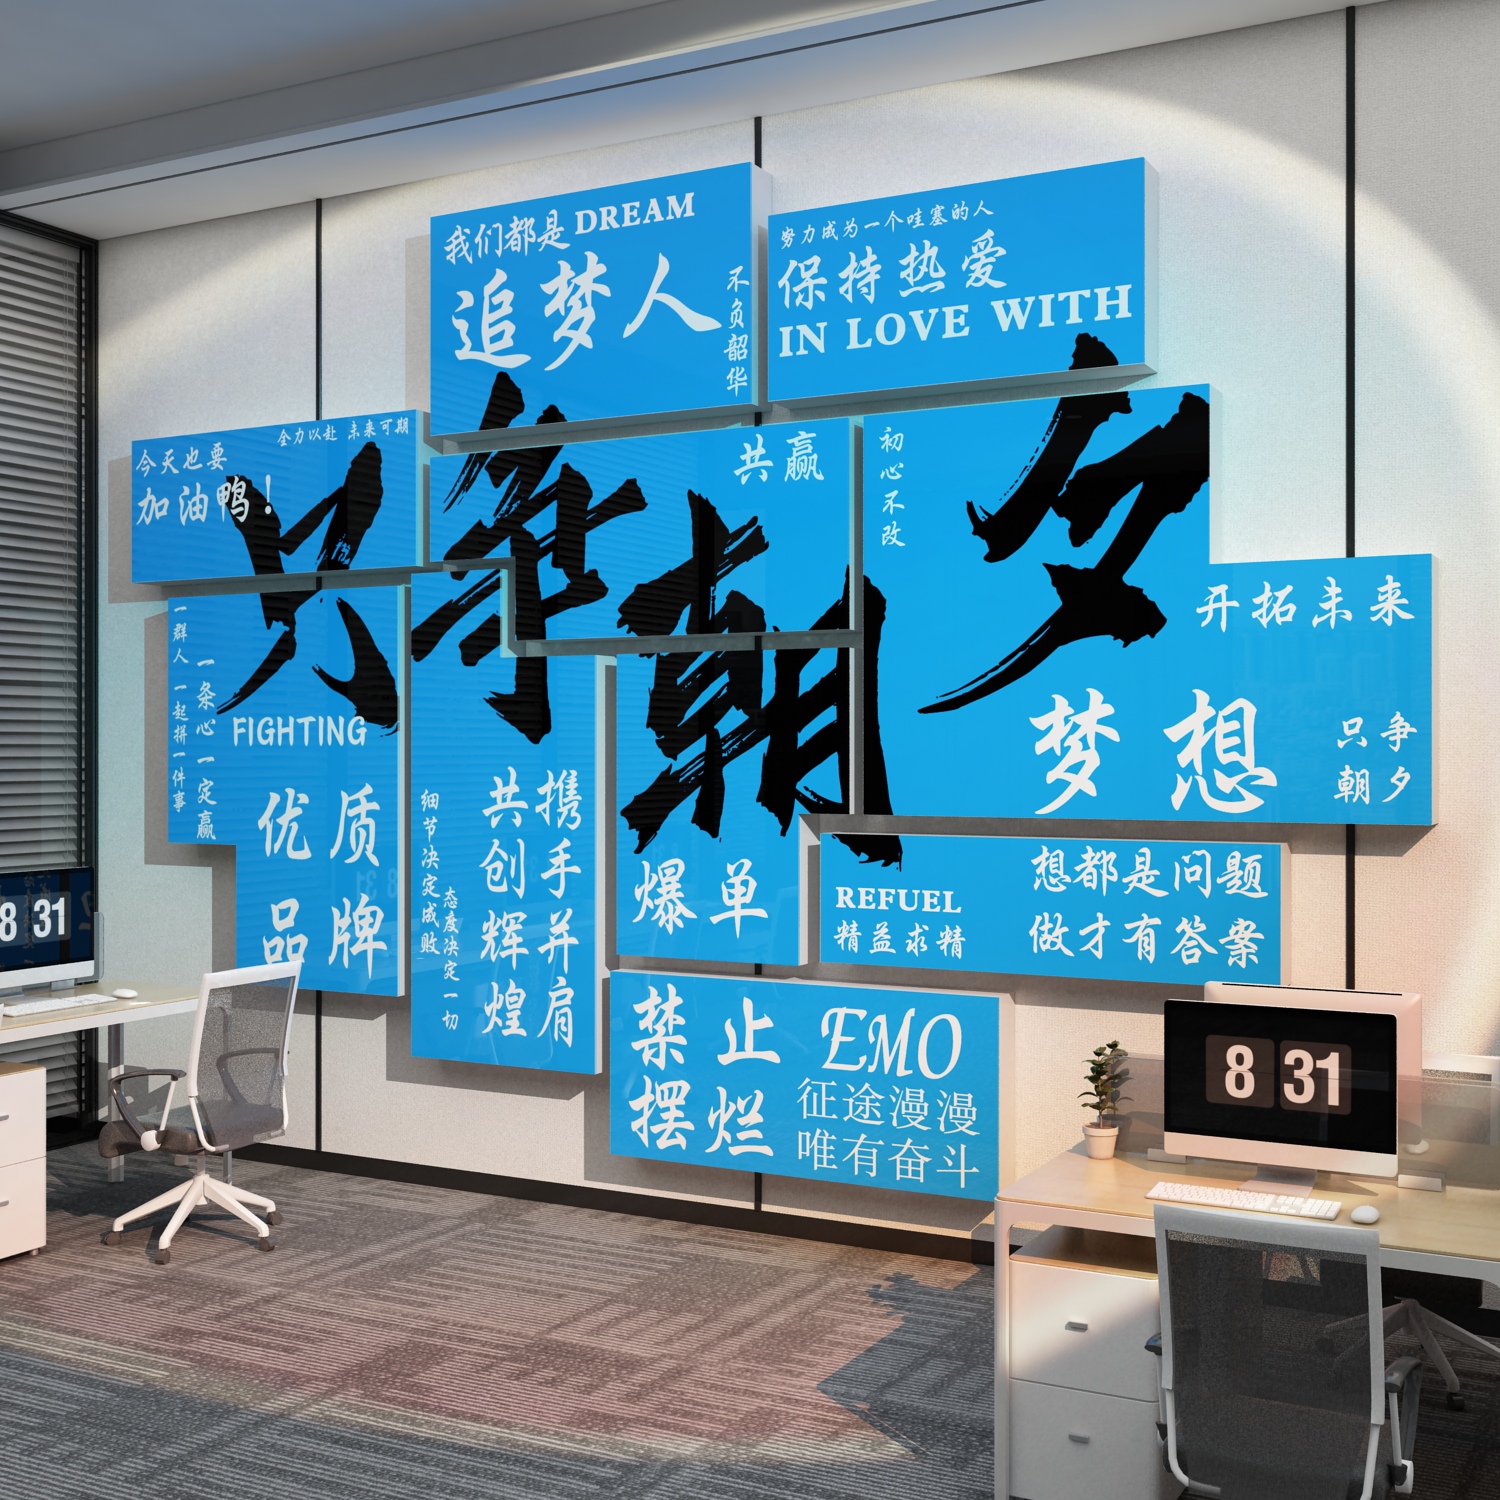 电商销售办公室墙面装饰公司背景励志标语氛围布置企业文化贴纸画